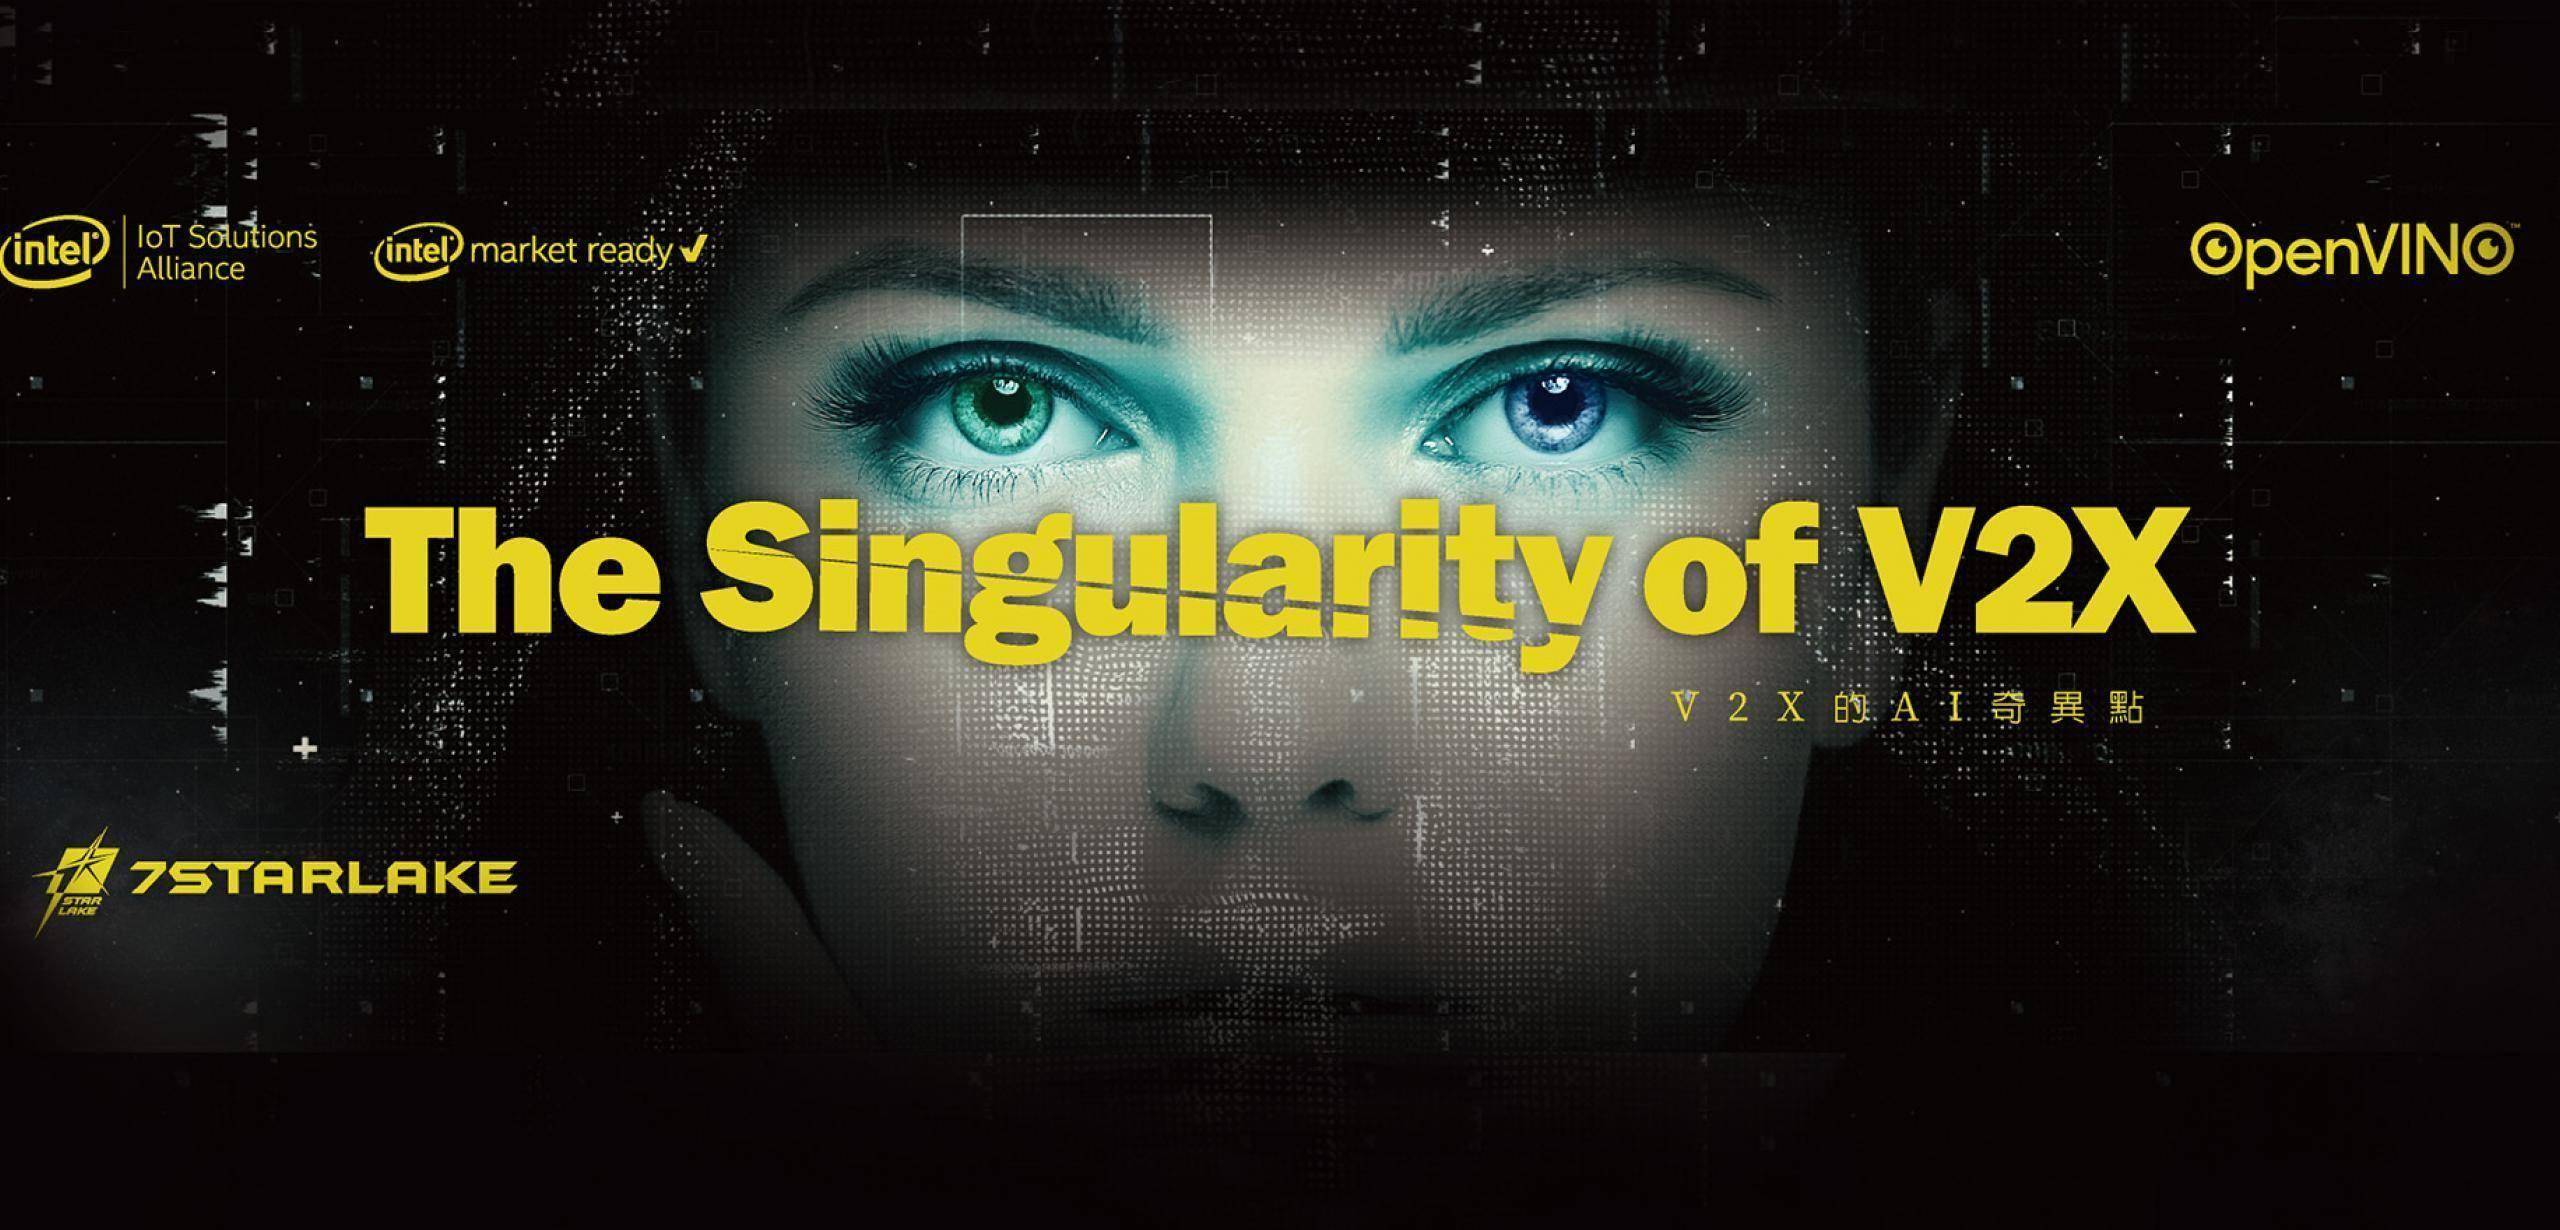  The Singularity of V2X 